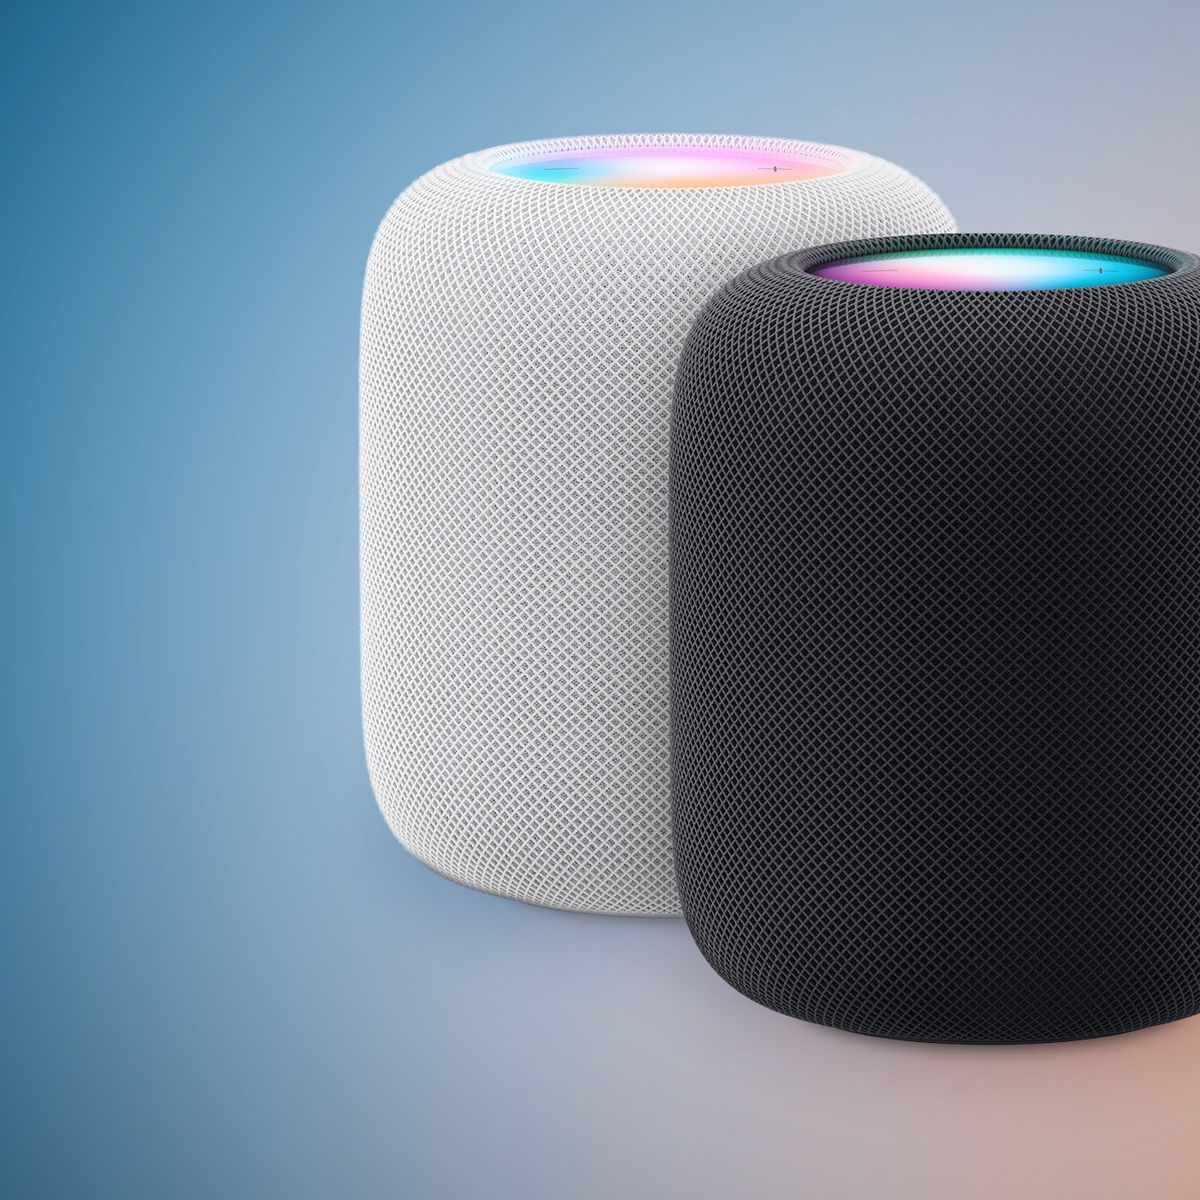 HomePod: Apple's Updated Full-Size Smart Speaker